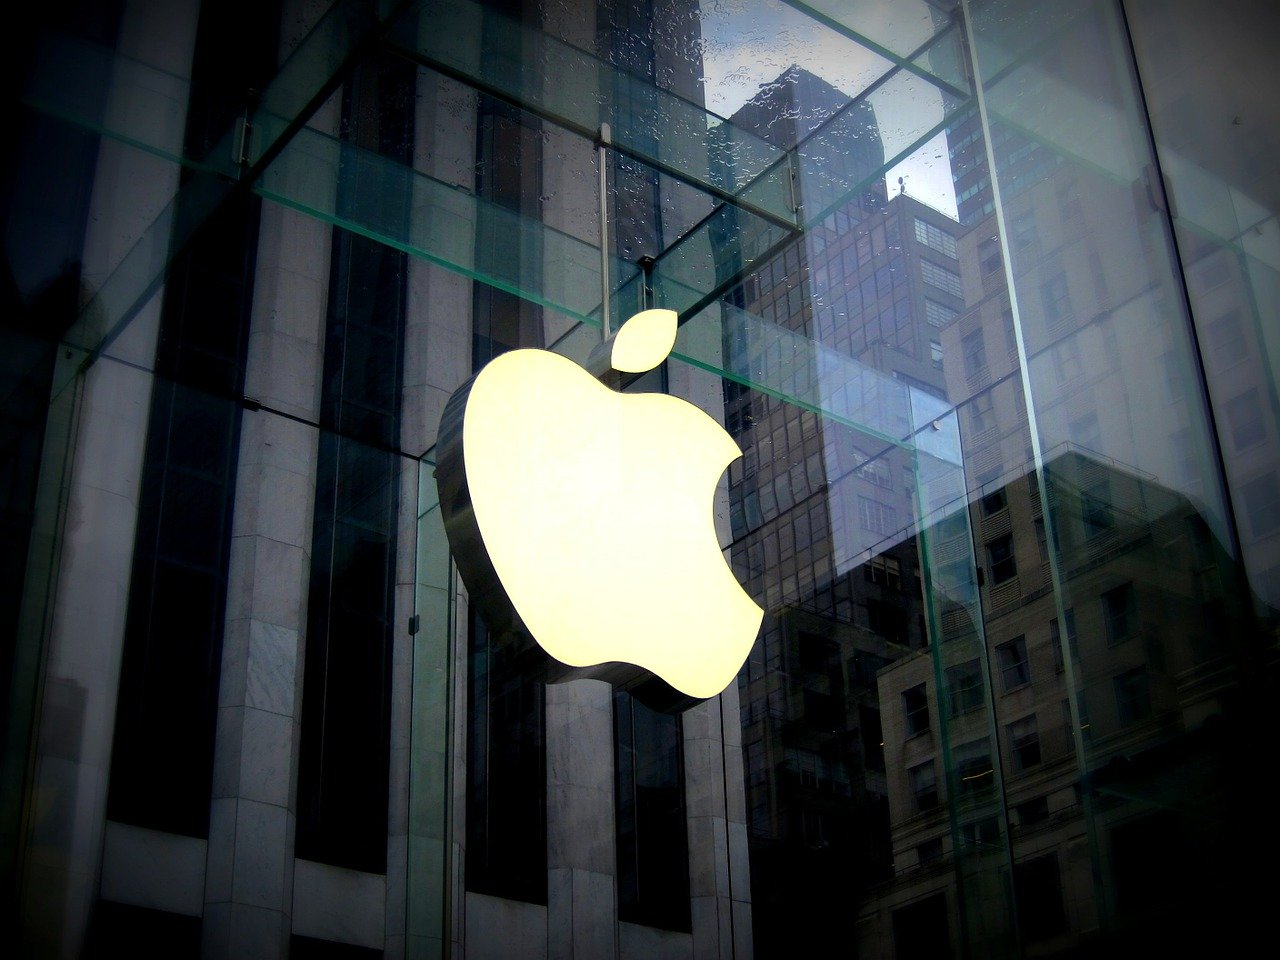  46 000 applications supprimées par Apple en Chine